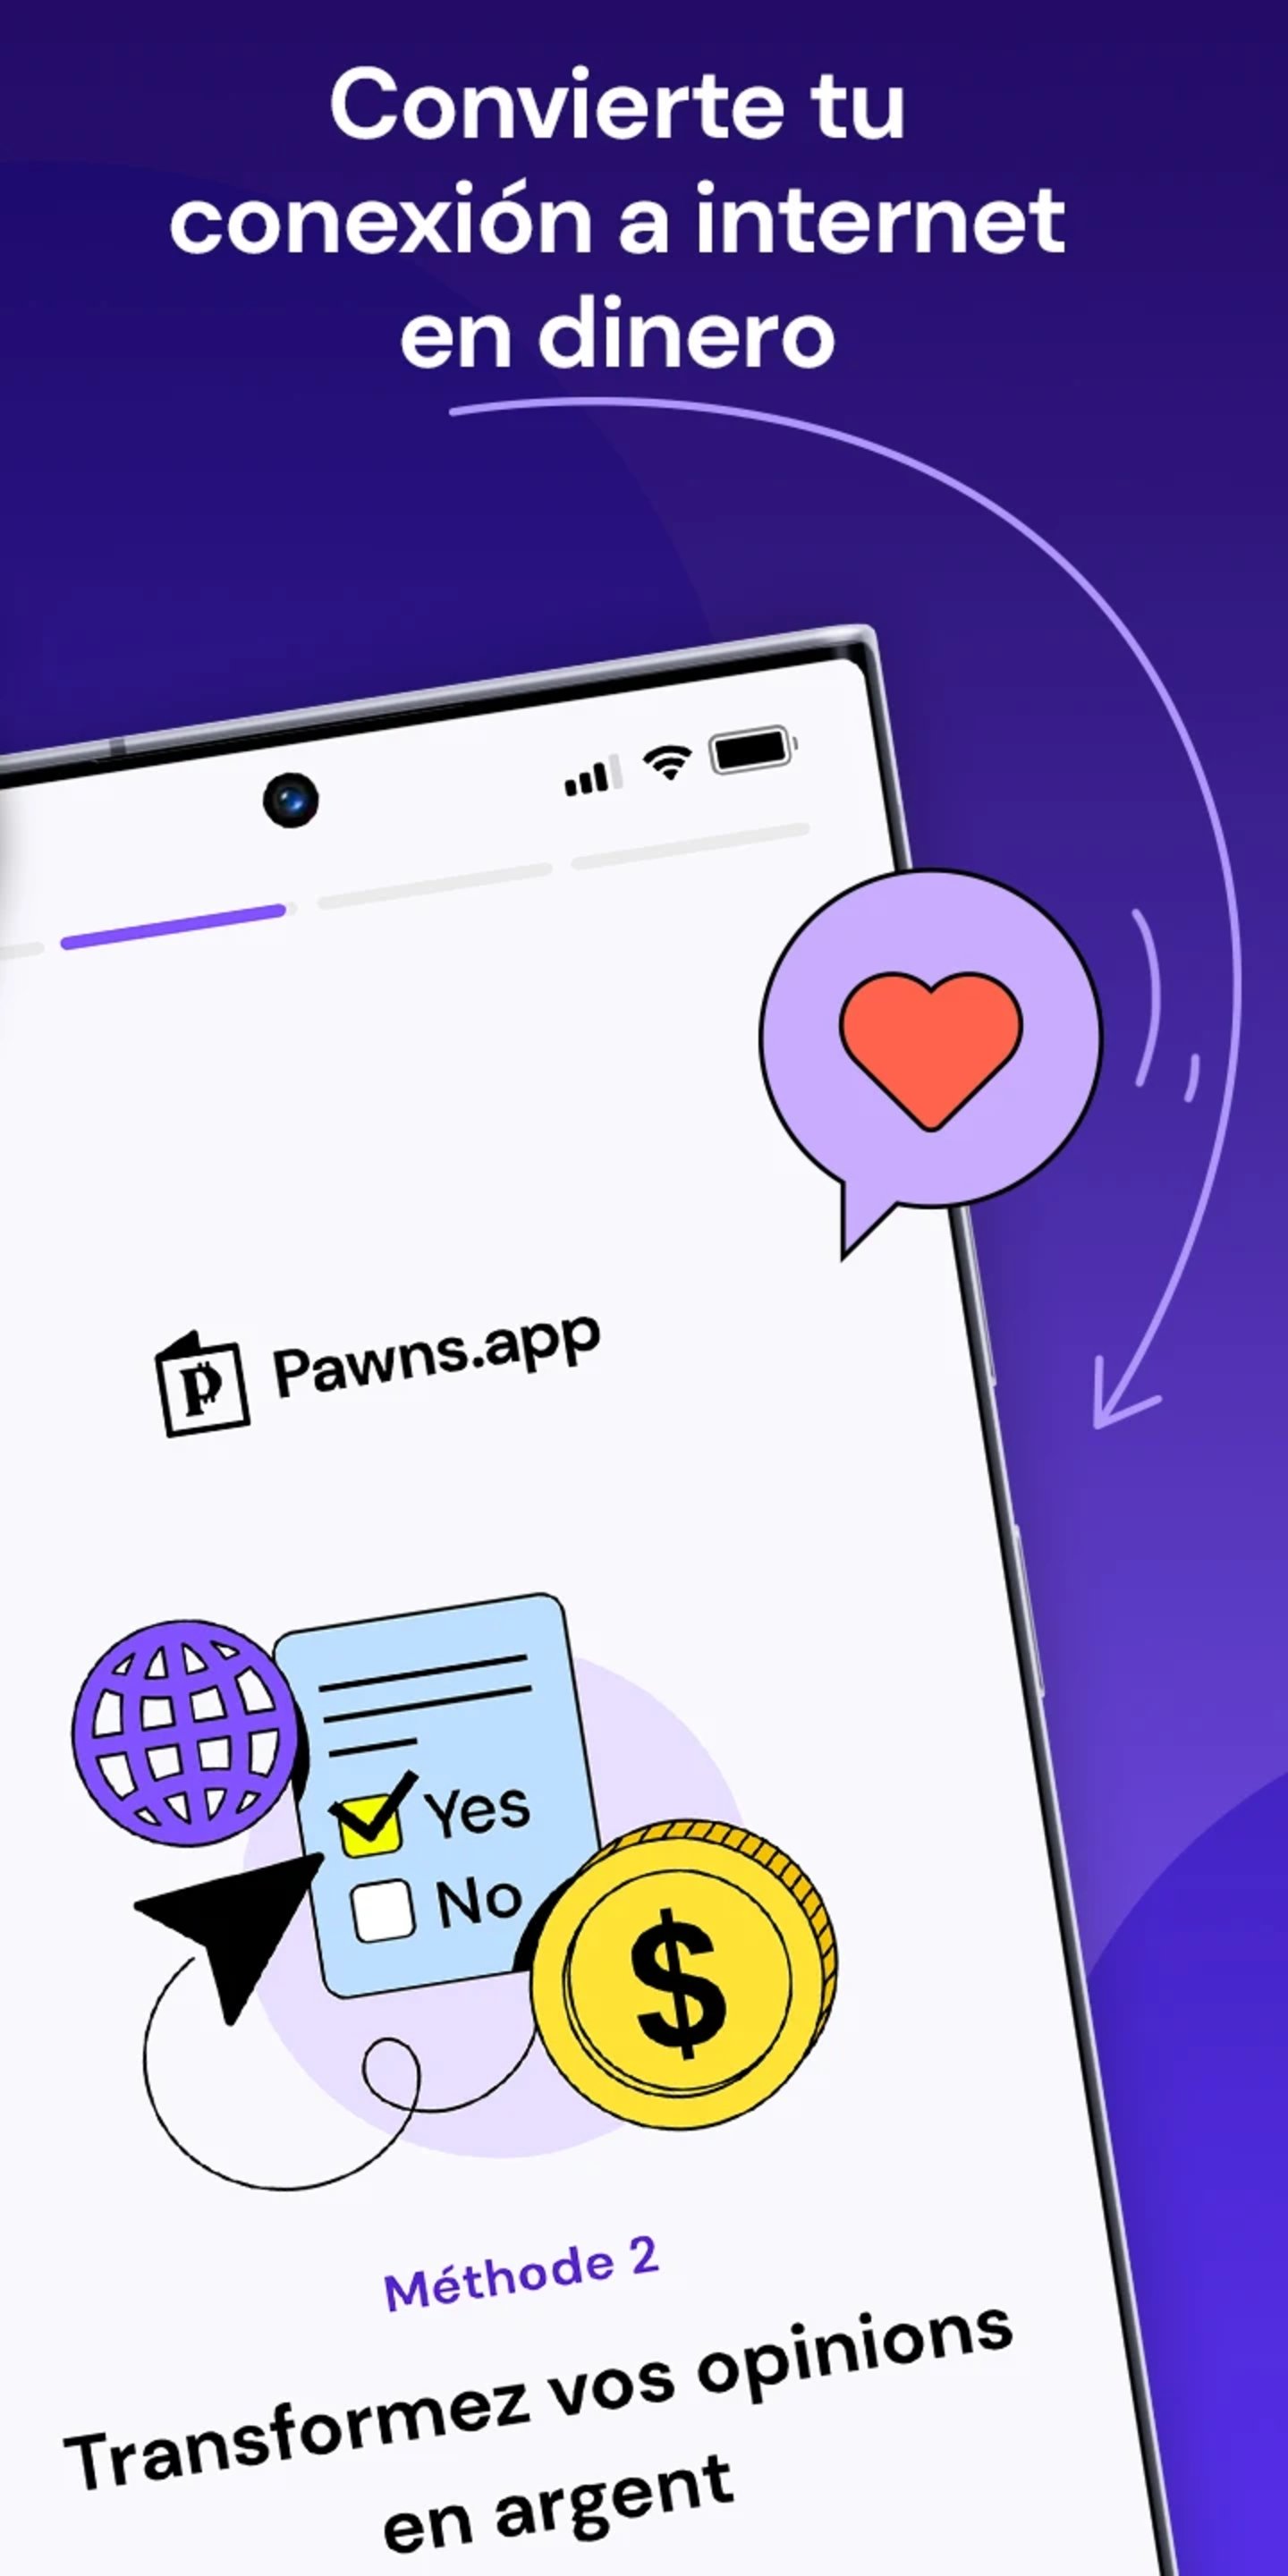 Imagen promocional de la app Pawns.app